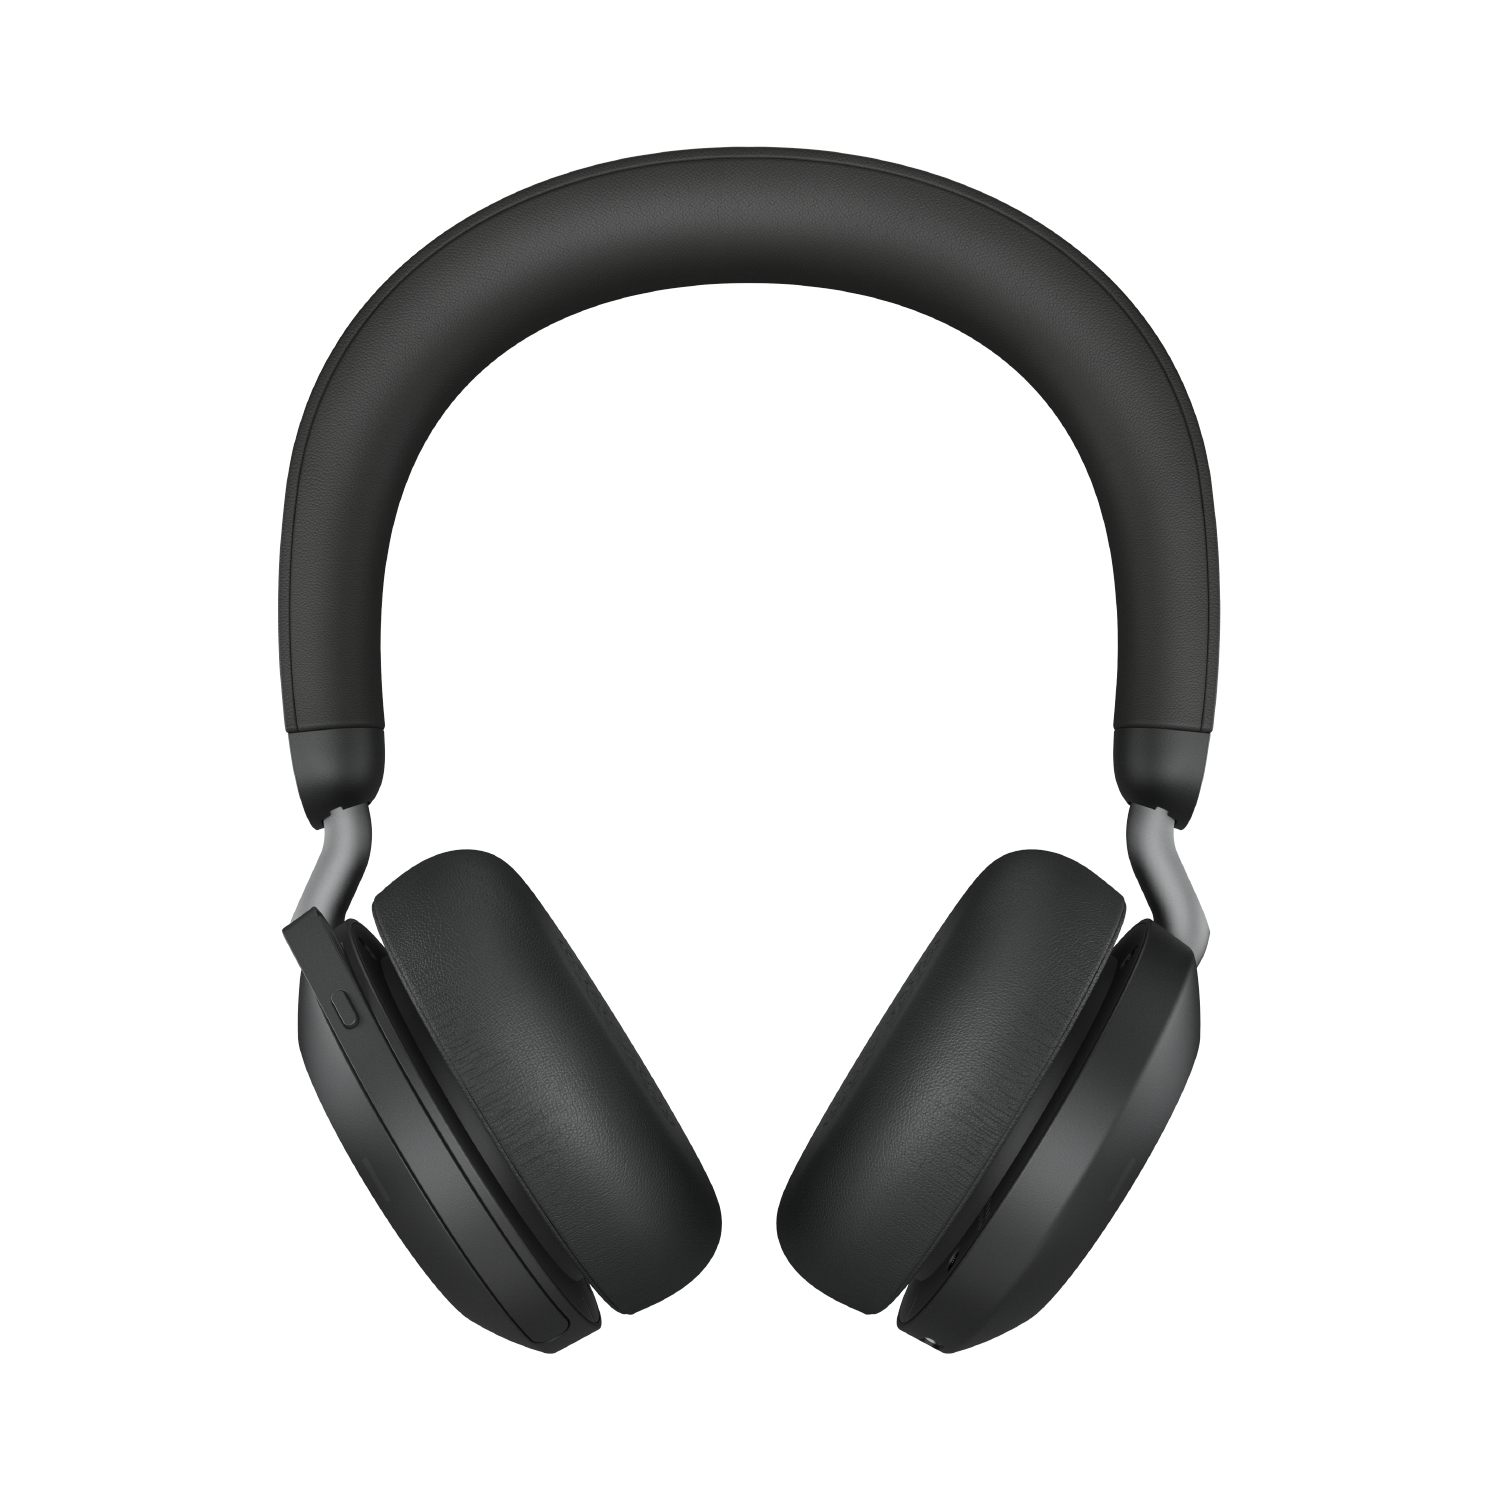 Jabra Evolve2 75 USB On-Ear Headphones with Mic - Black